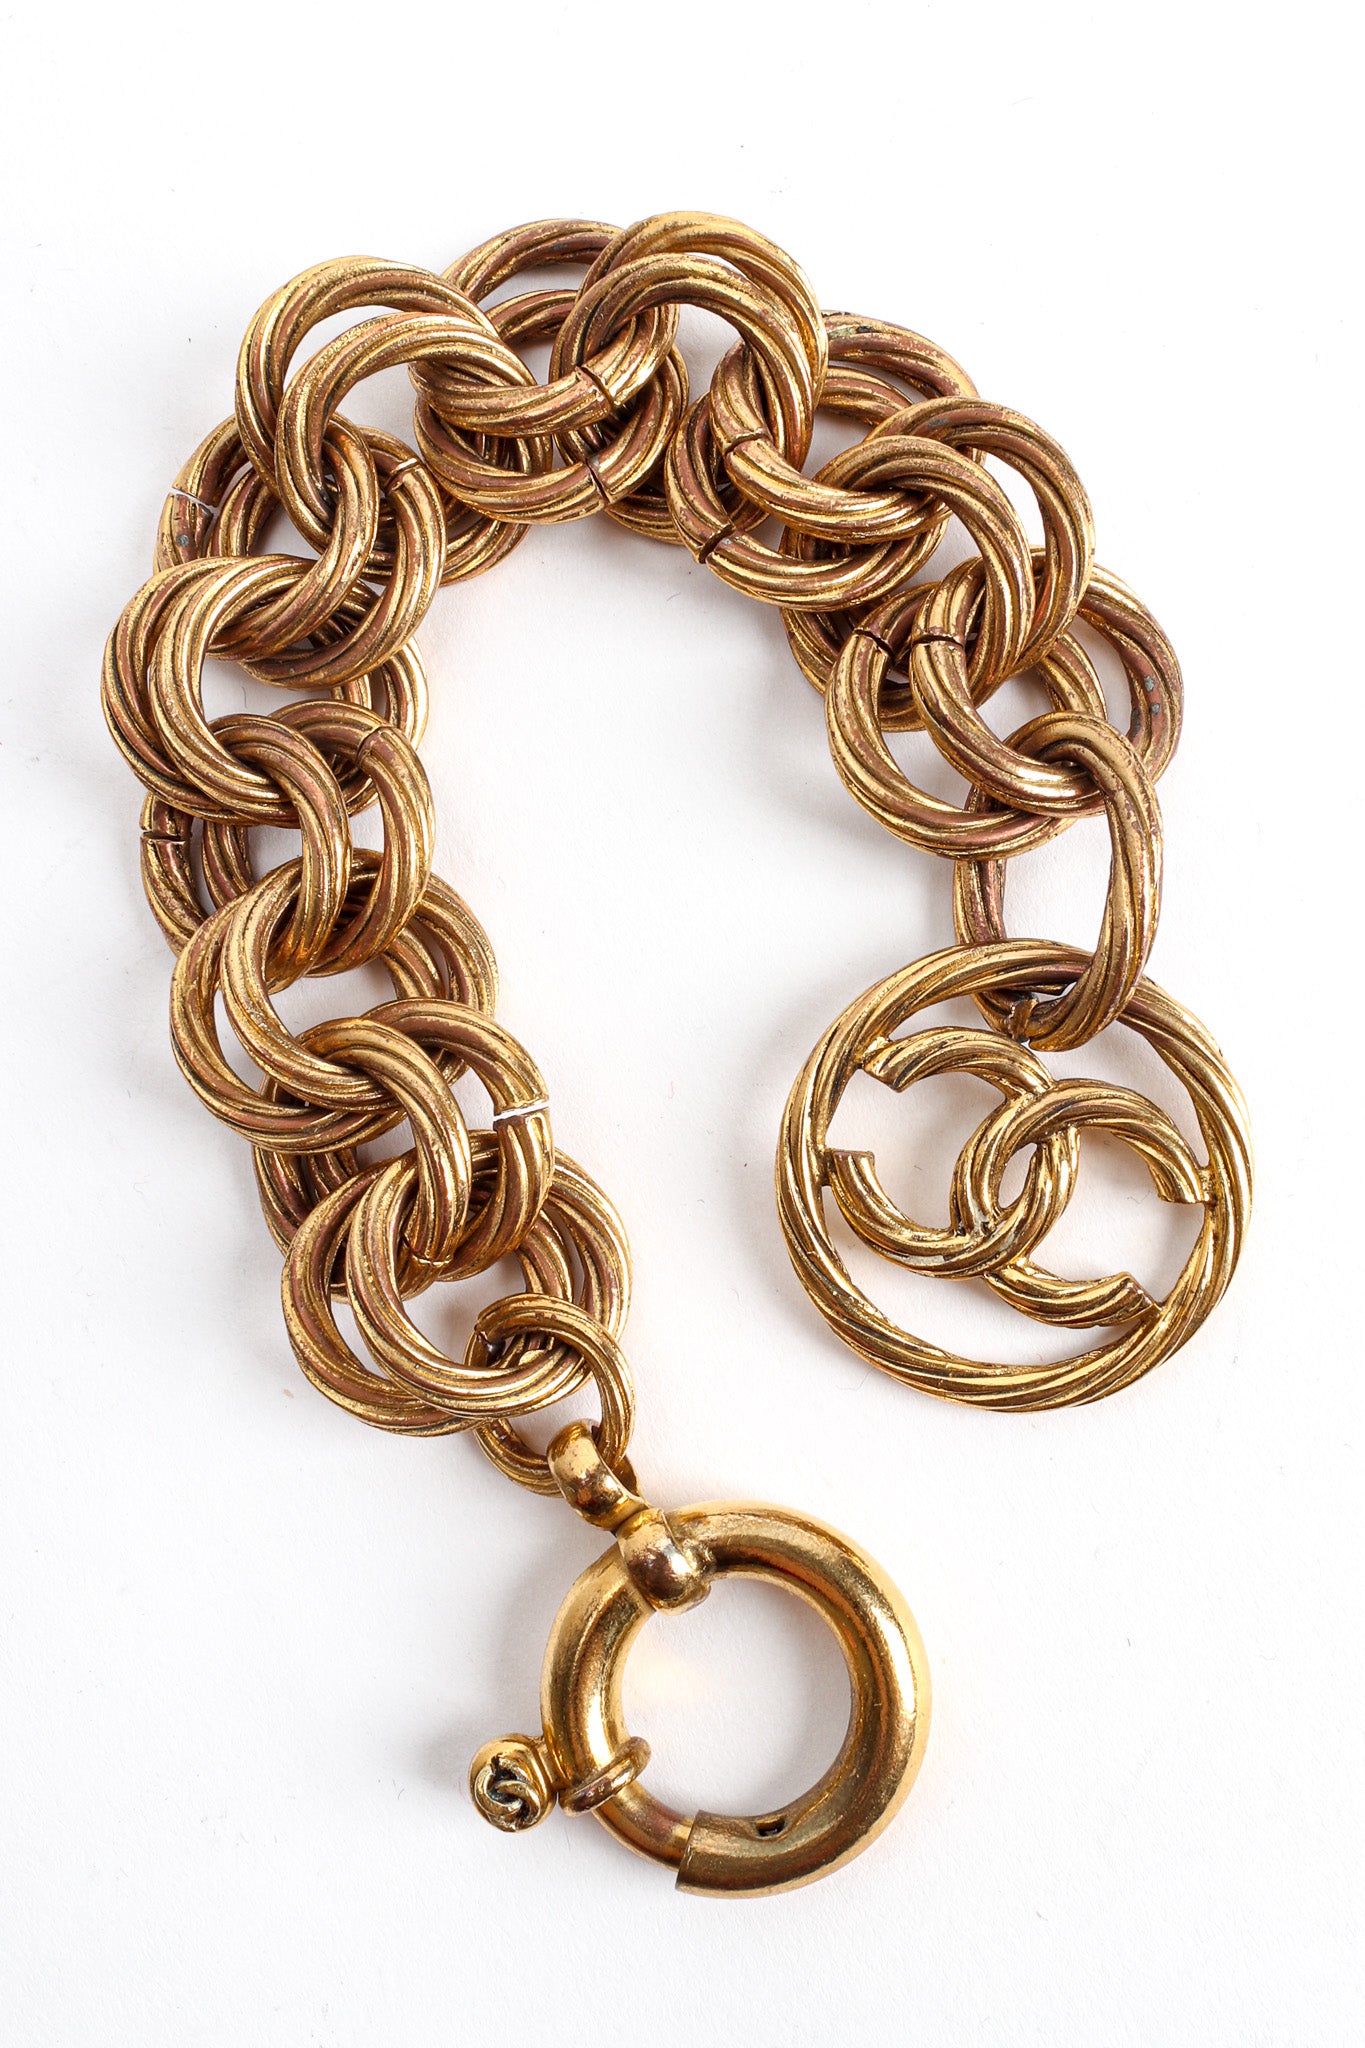 CHANEL, Jewelry, Chanel Turnlock Chain Link Bracelet